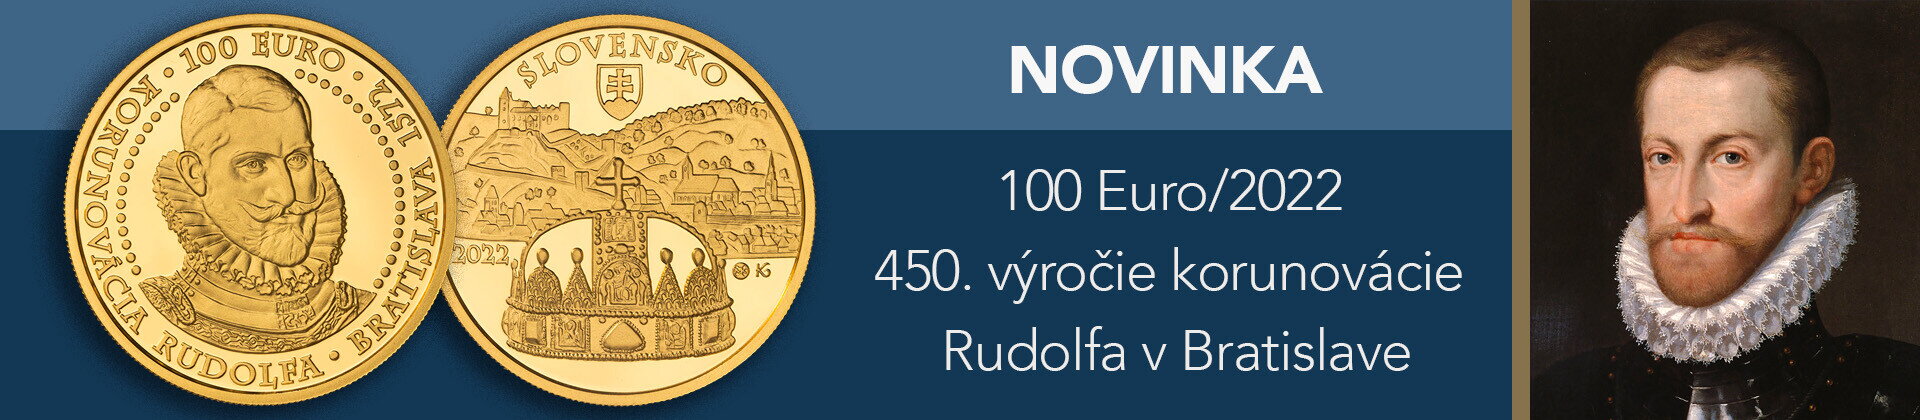 100Euro/2022 Rudolf korunovácia